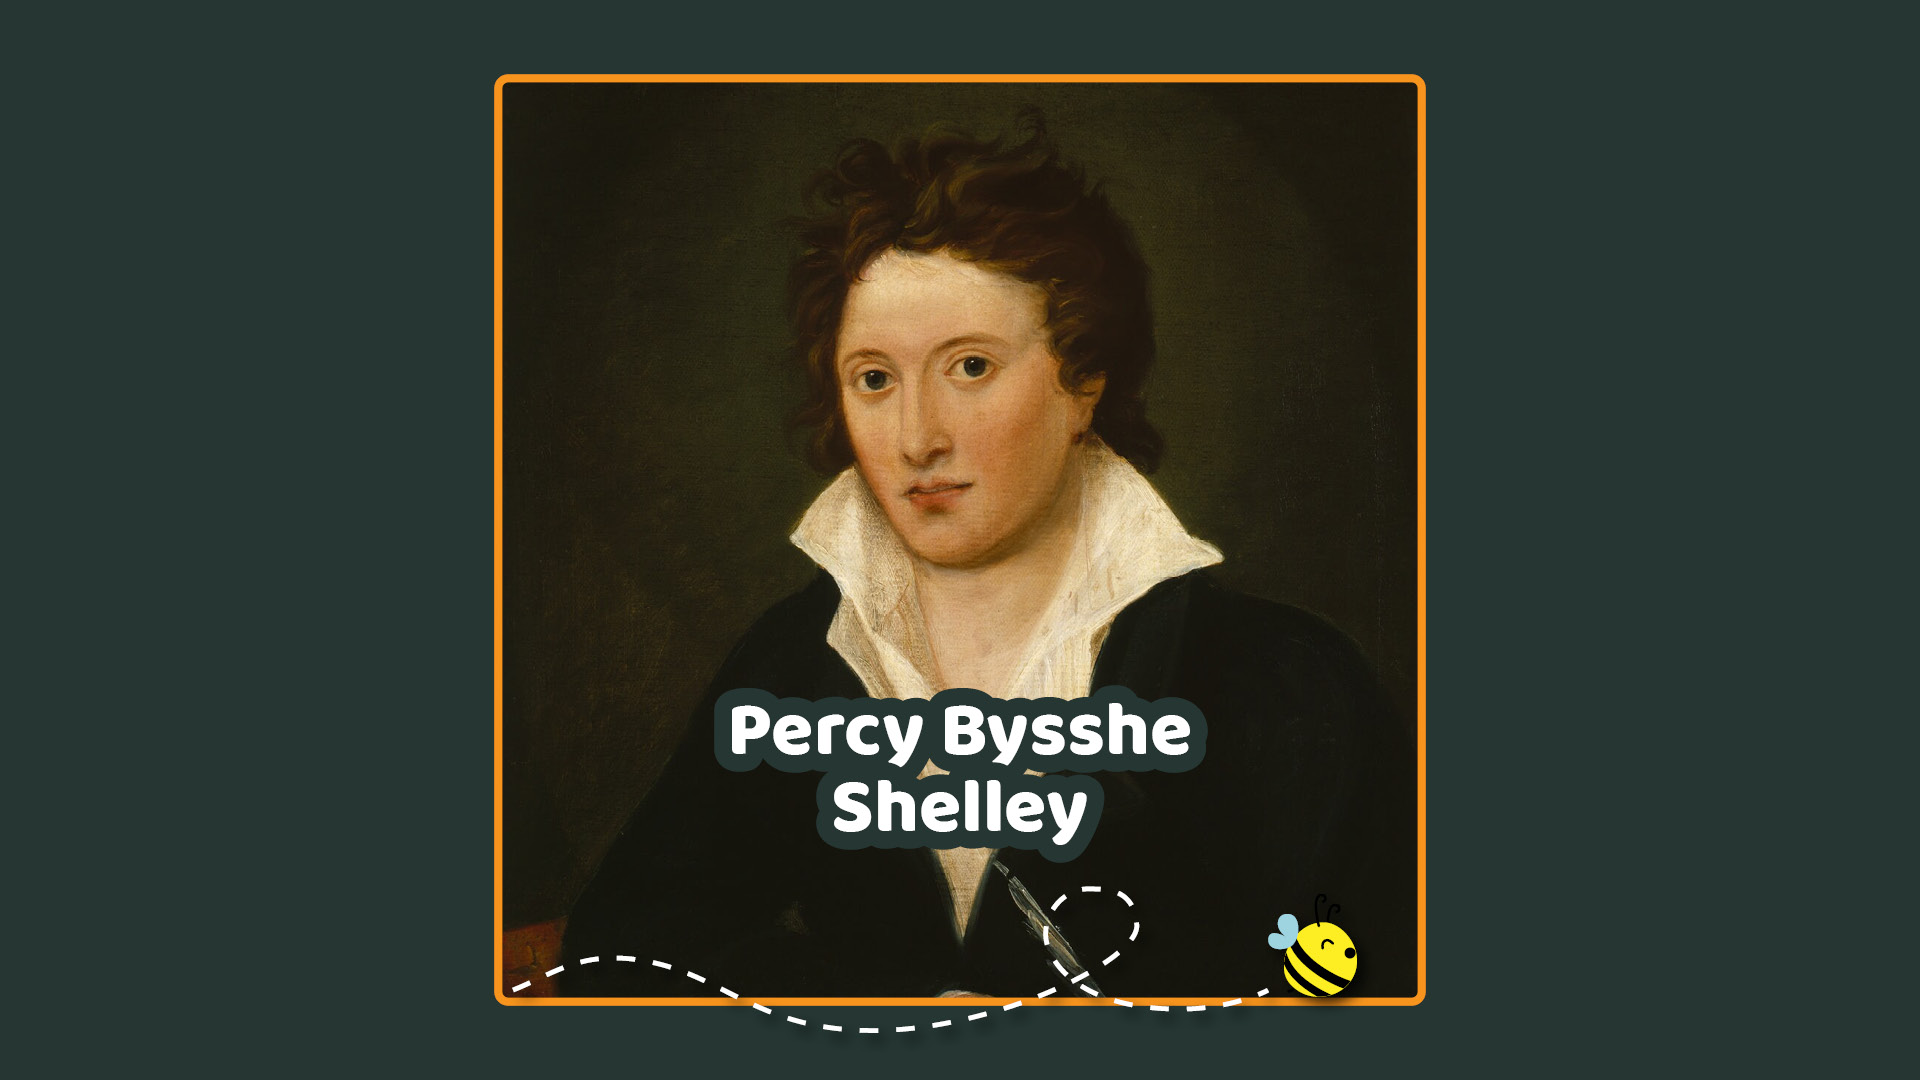 Ritratto di Percy Bysshe Shelley del 1819 ad opera Amelia Curran esposto alla National Portrait Gallery di Londra.